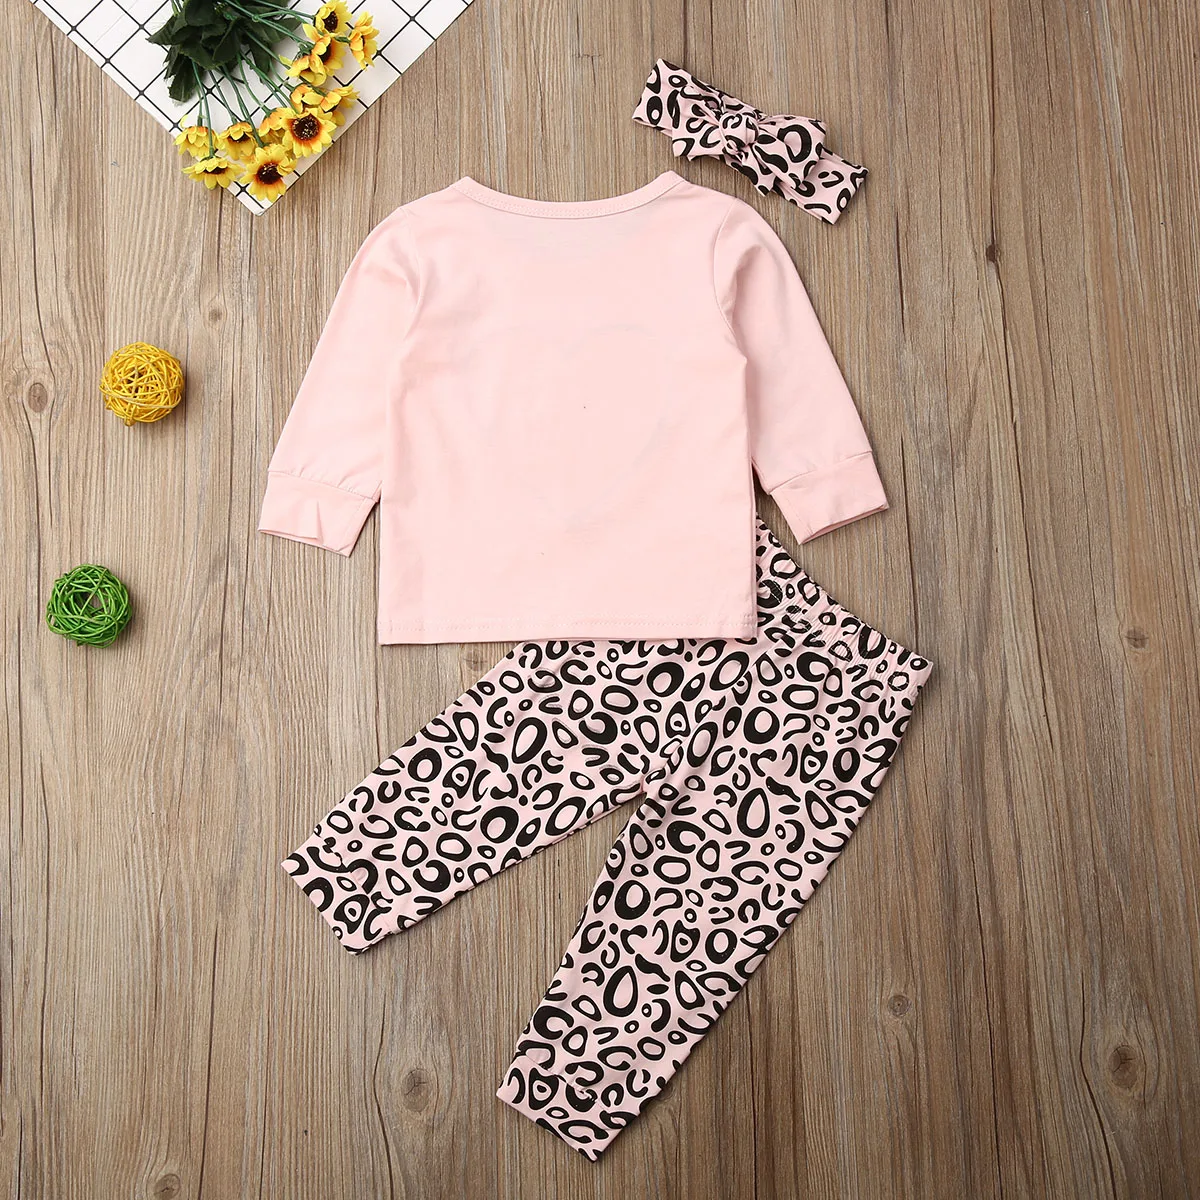 Осенние милые комплекты одежды для маленьких девочек, 3 предмета, Розовый пуловер с леопардовым принтом, топы+ штаны+ повязка на голову, От 6 месяцев до 3 лет